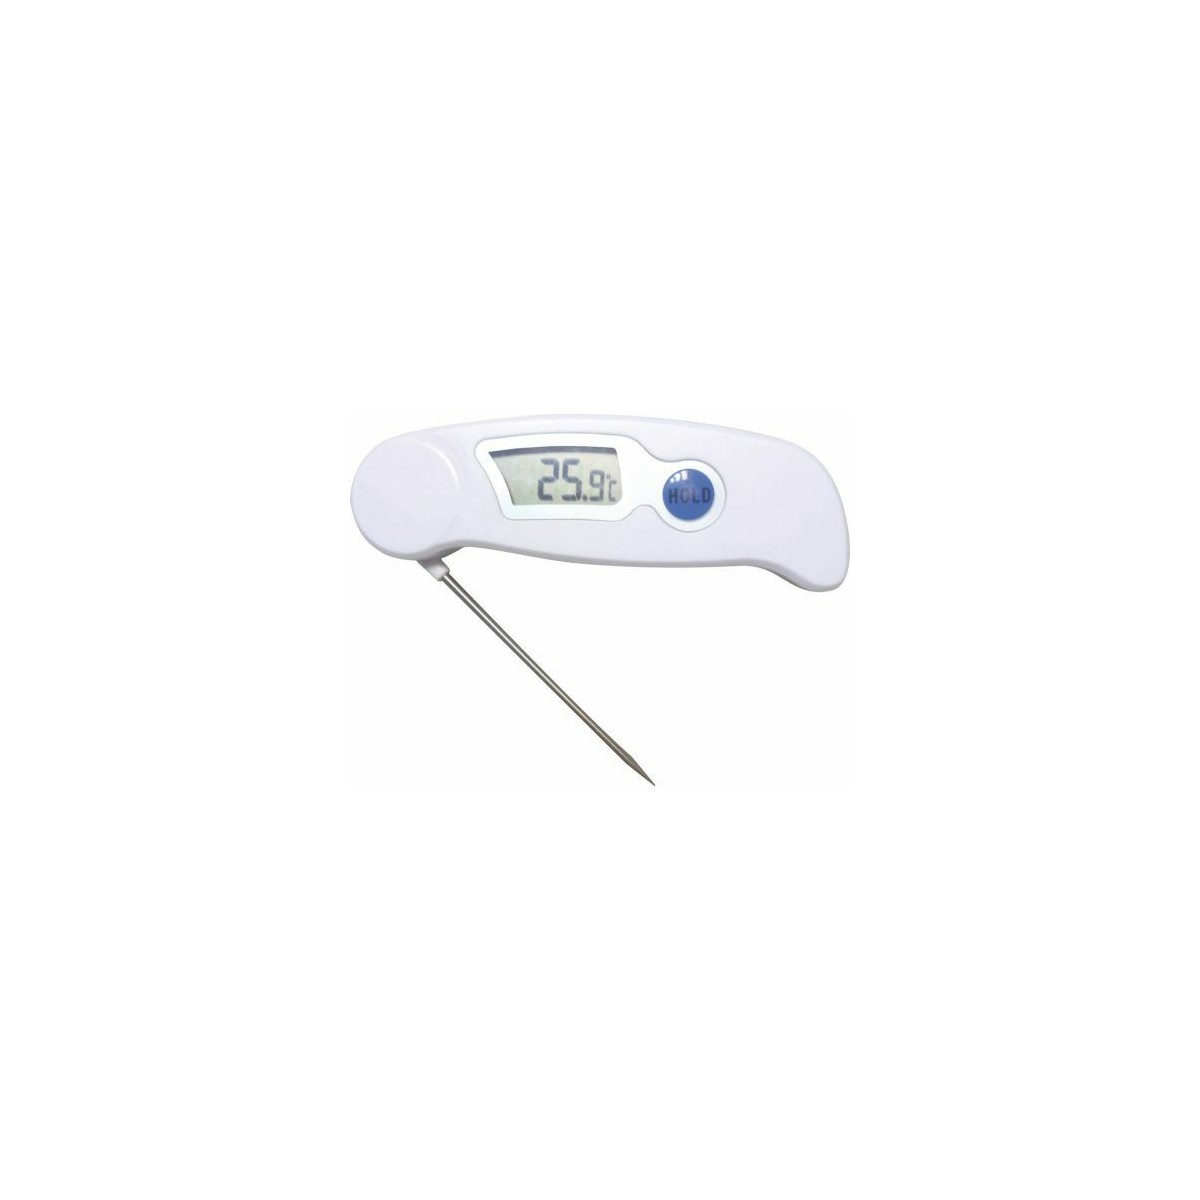 Thermomètre de four en Inox - +50° à 300° C